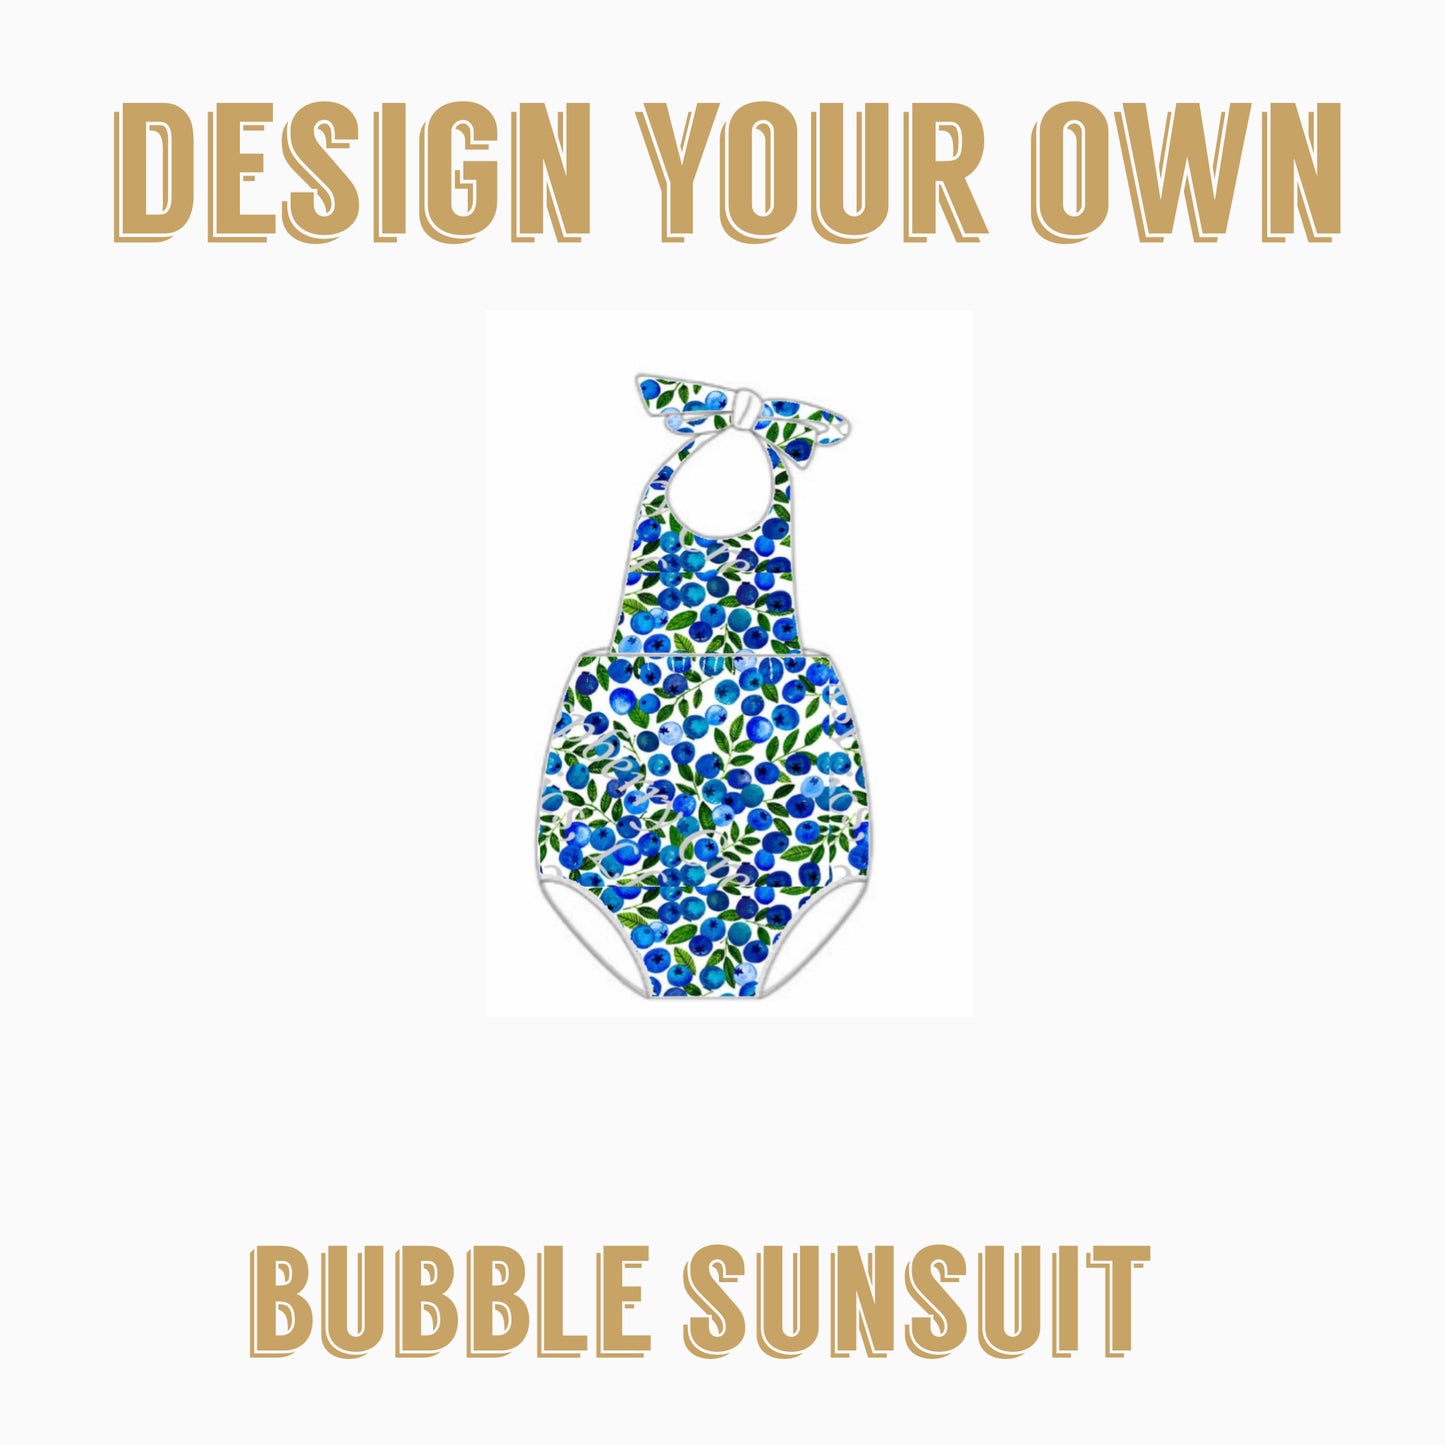 Design Your Own| BUBBLE SUNSUIT